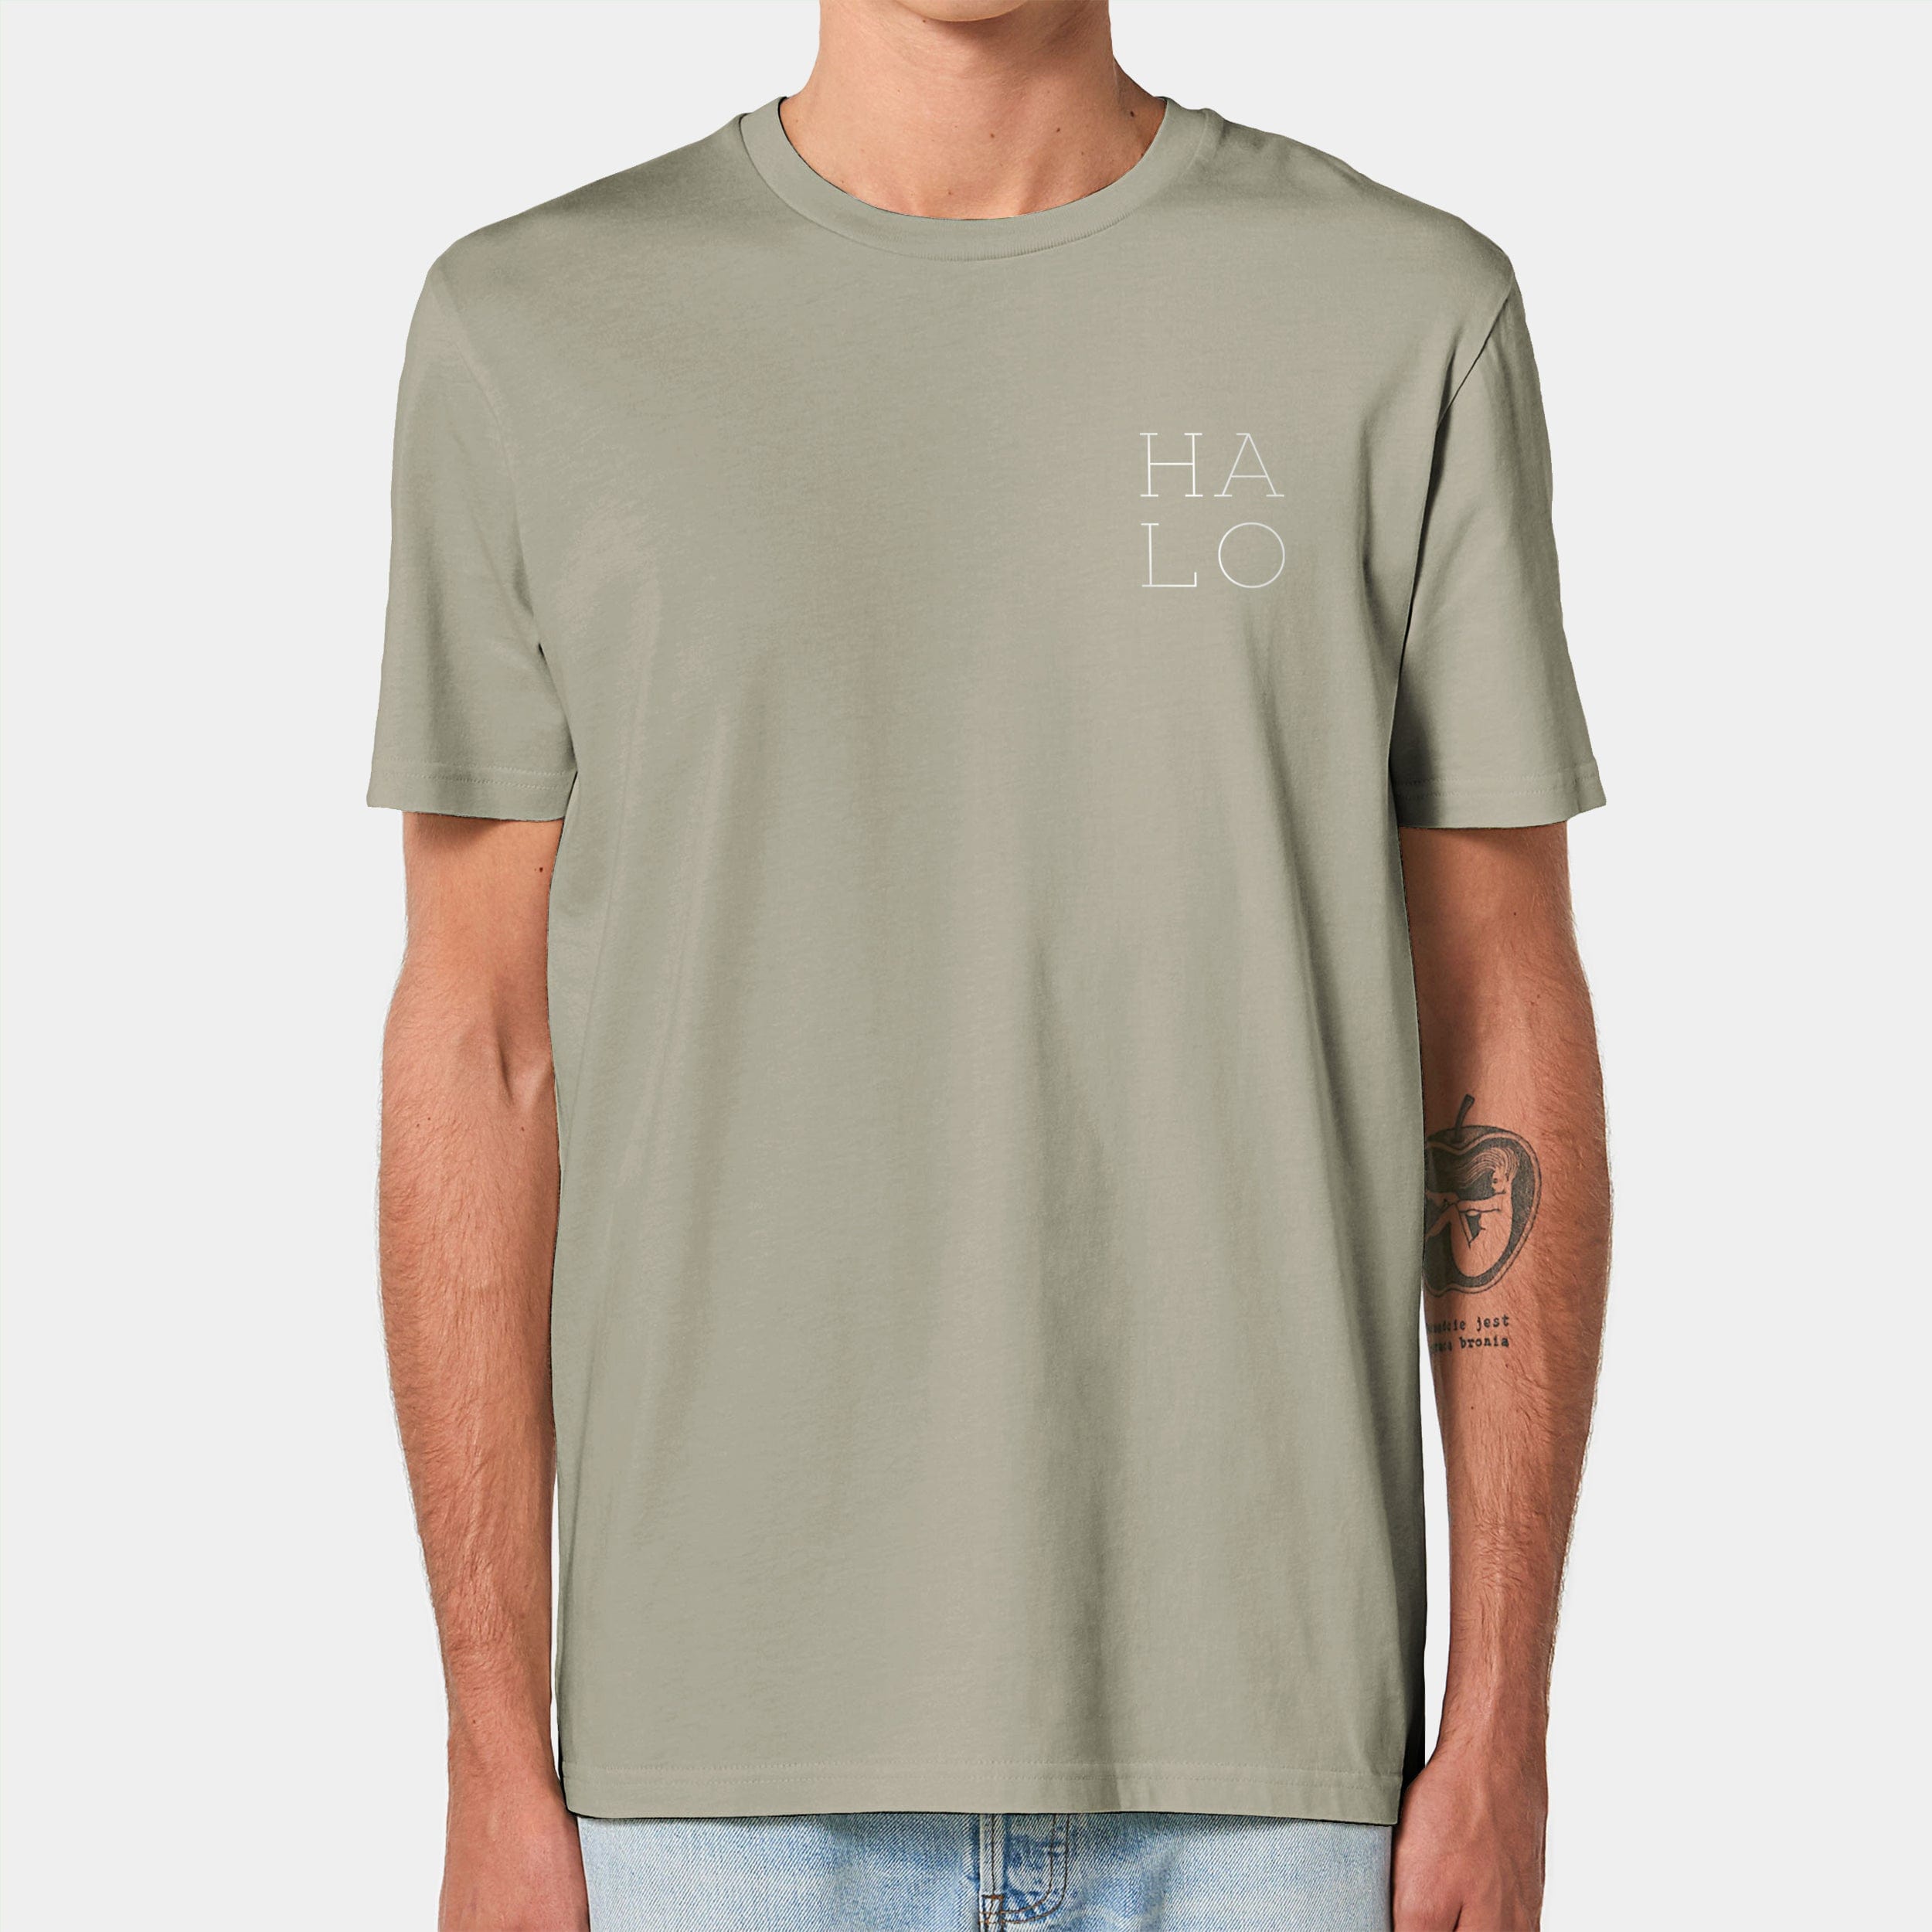 HEITER & LÄSSIG T-Shirt "HALO" XXS / sage - aus nachhaltiger und fairer Produktion